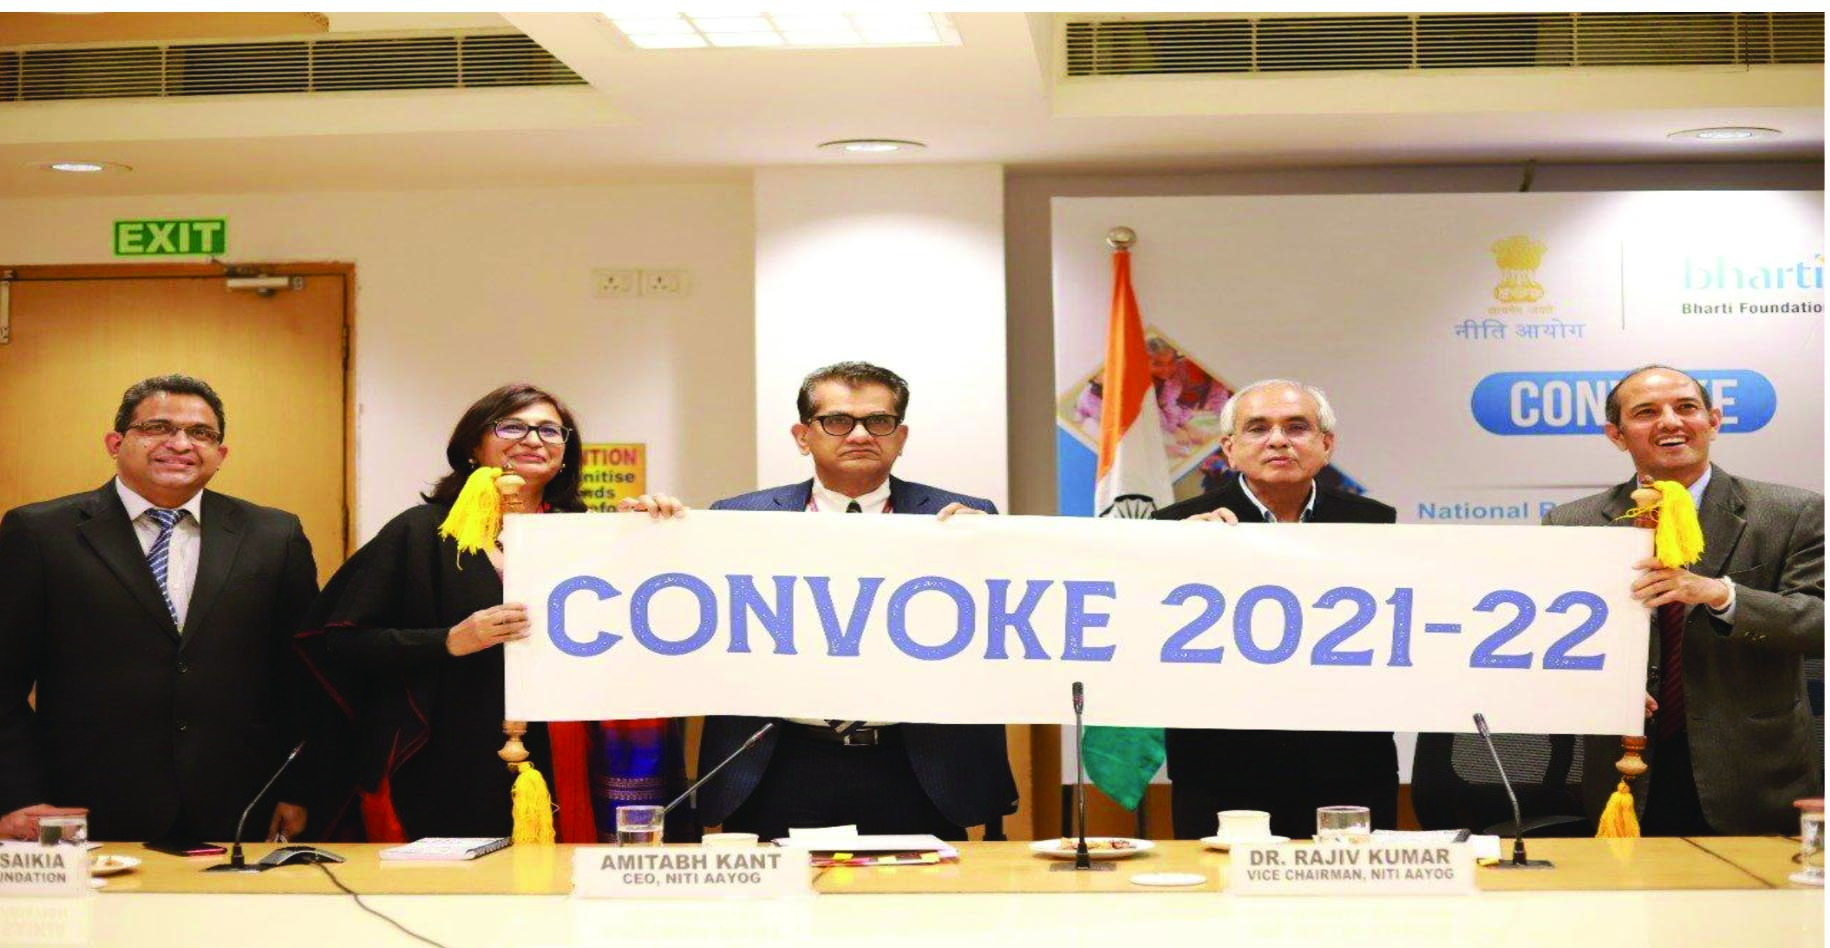 Convoke 2021-22